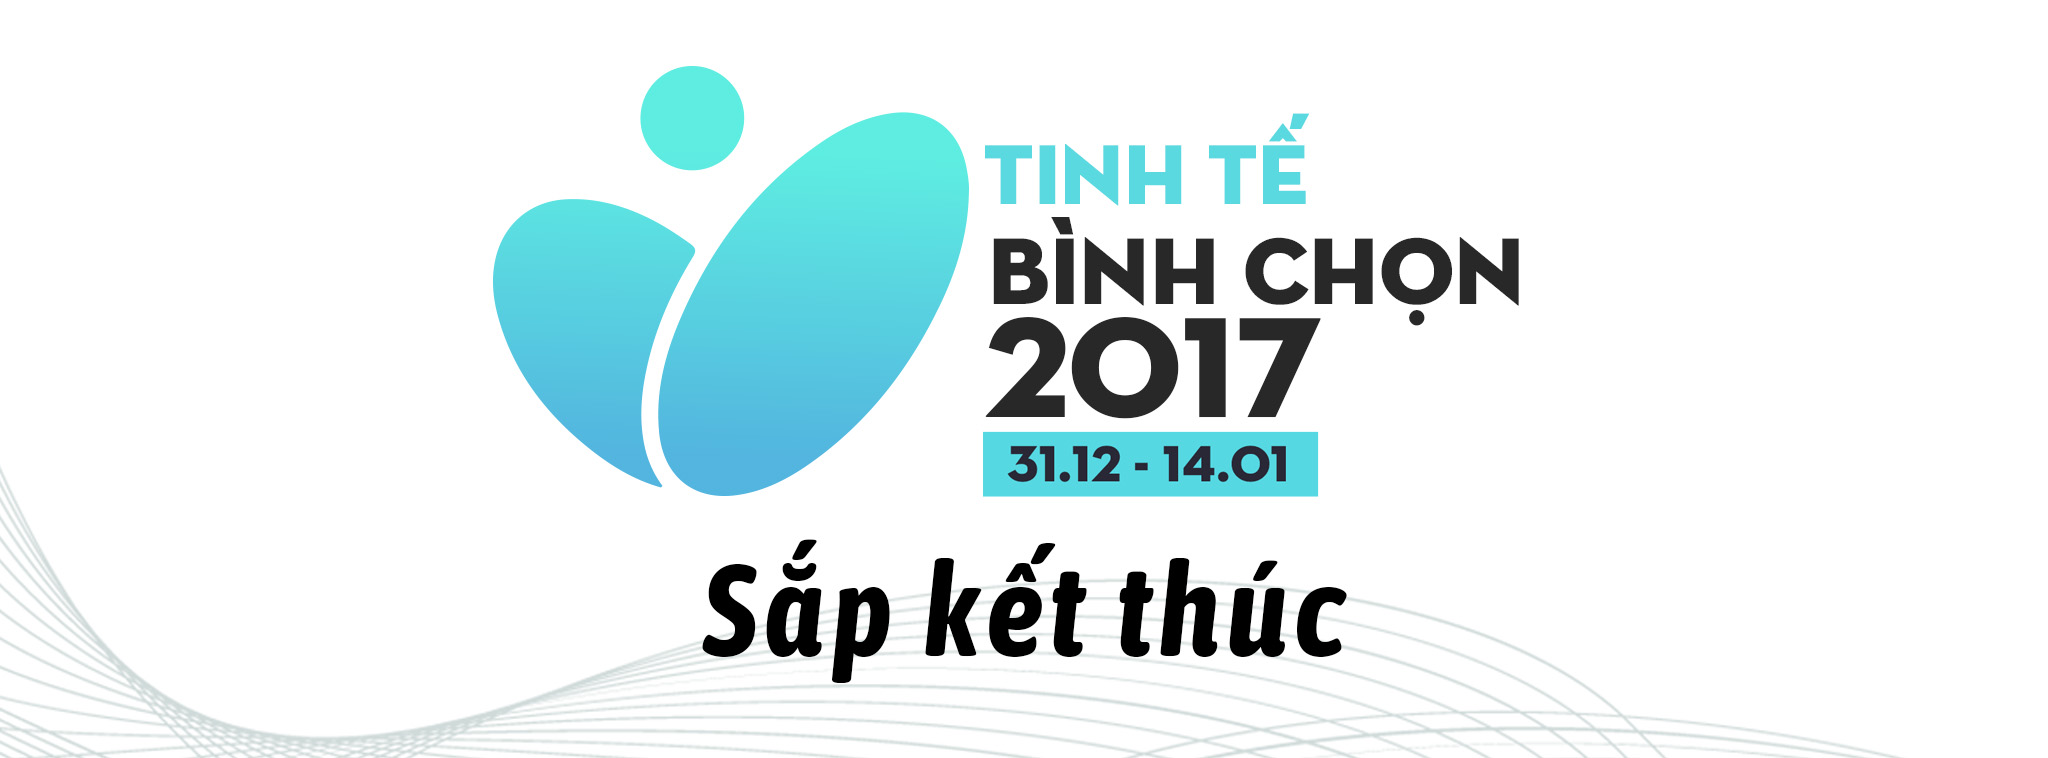 [TTBC17] 0 giờ đêm nay đóng cổng Tinh Tế Bình Chọn 2017, ngày mai dự đoán sản phẩm yêu thích nhất